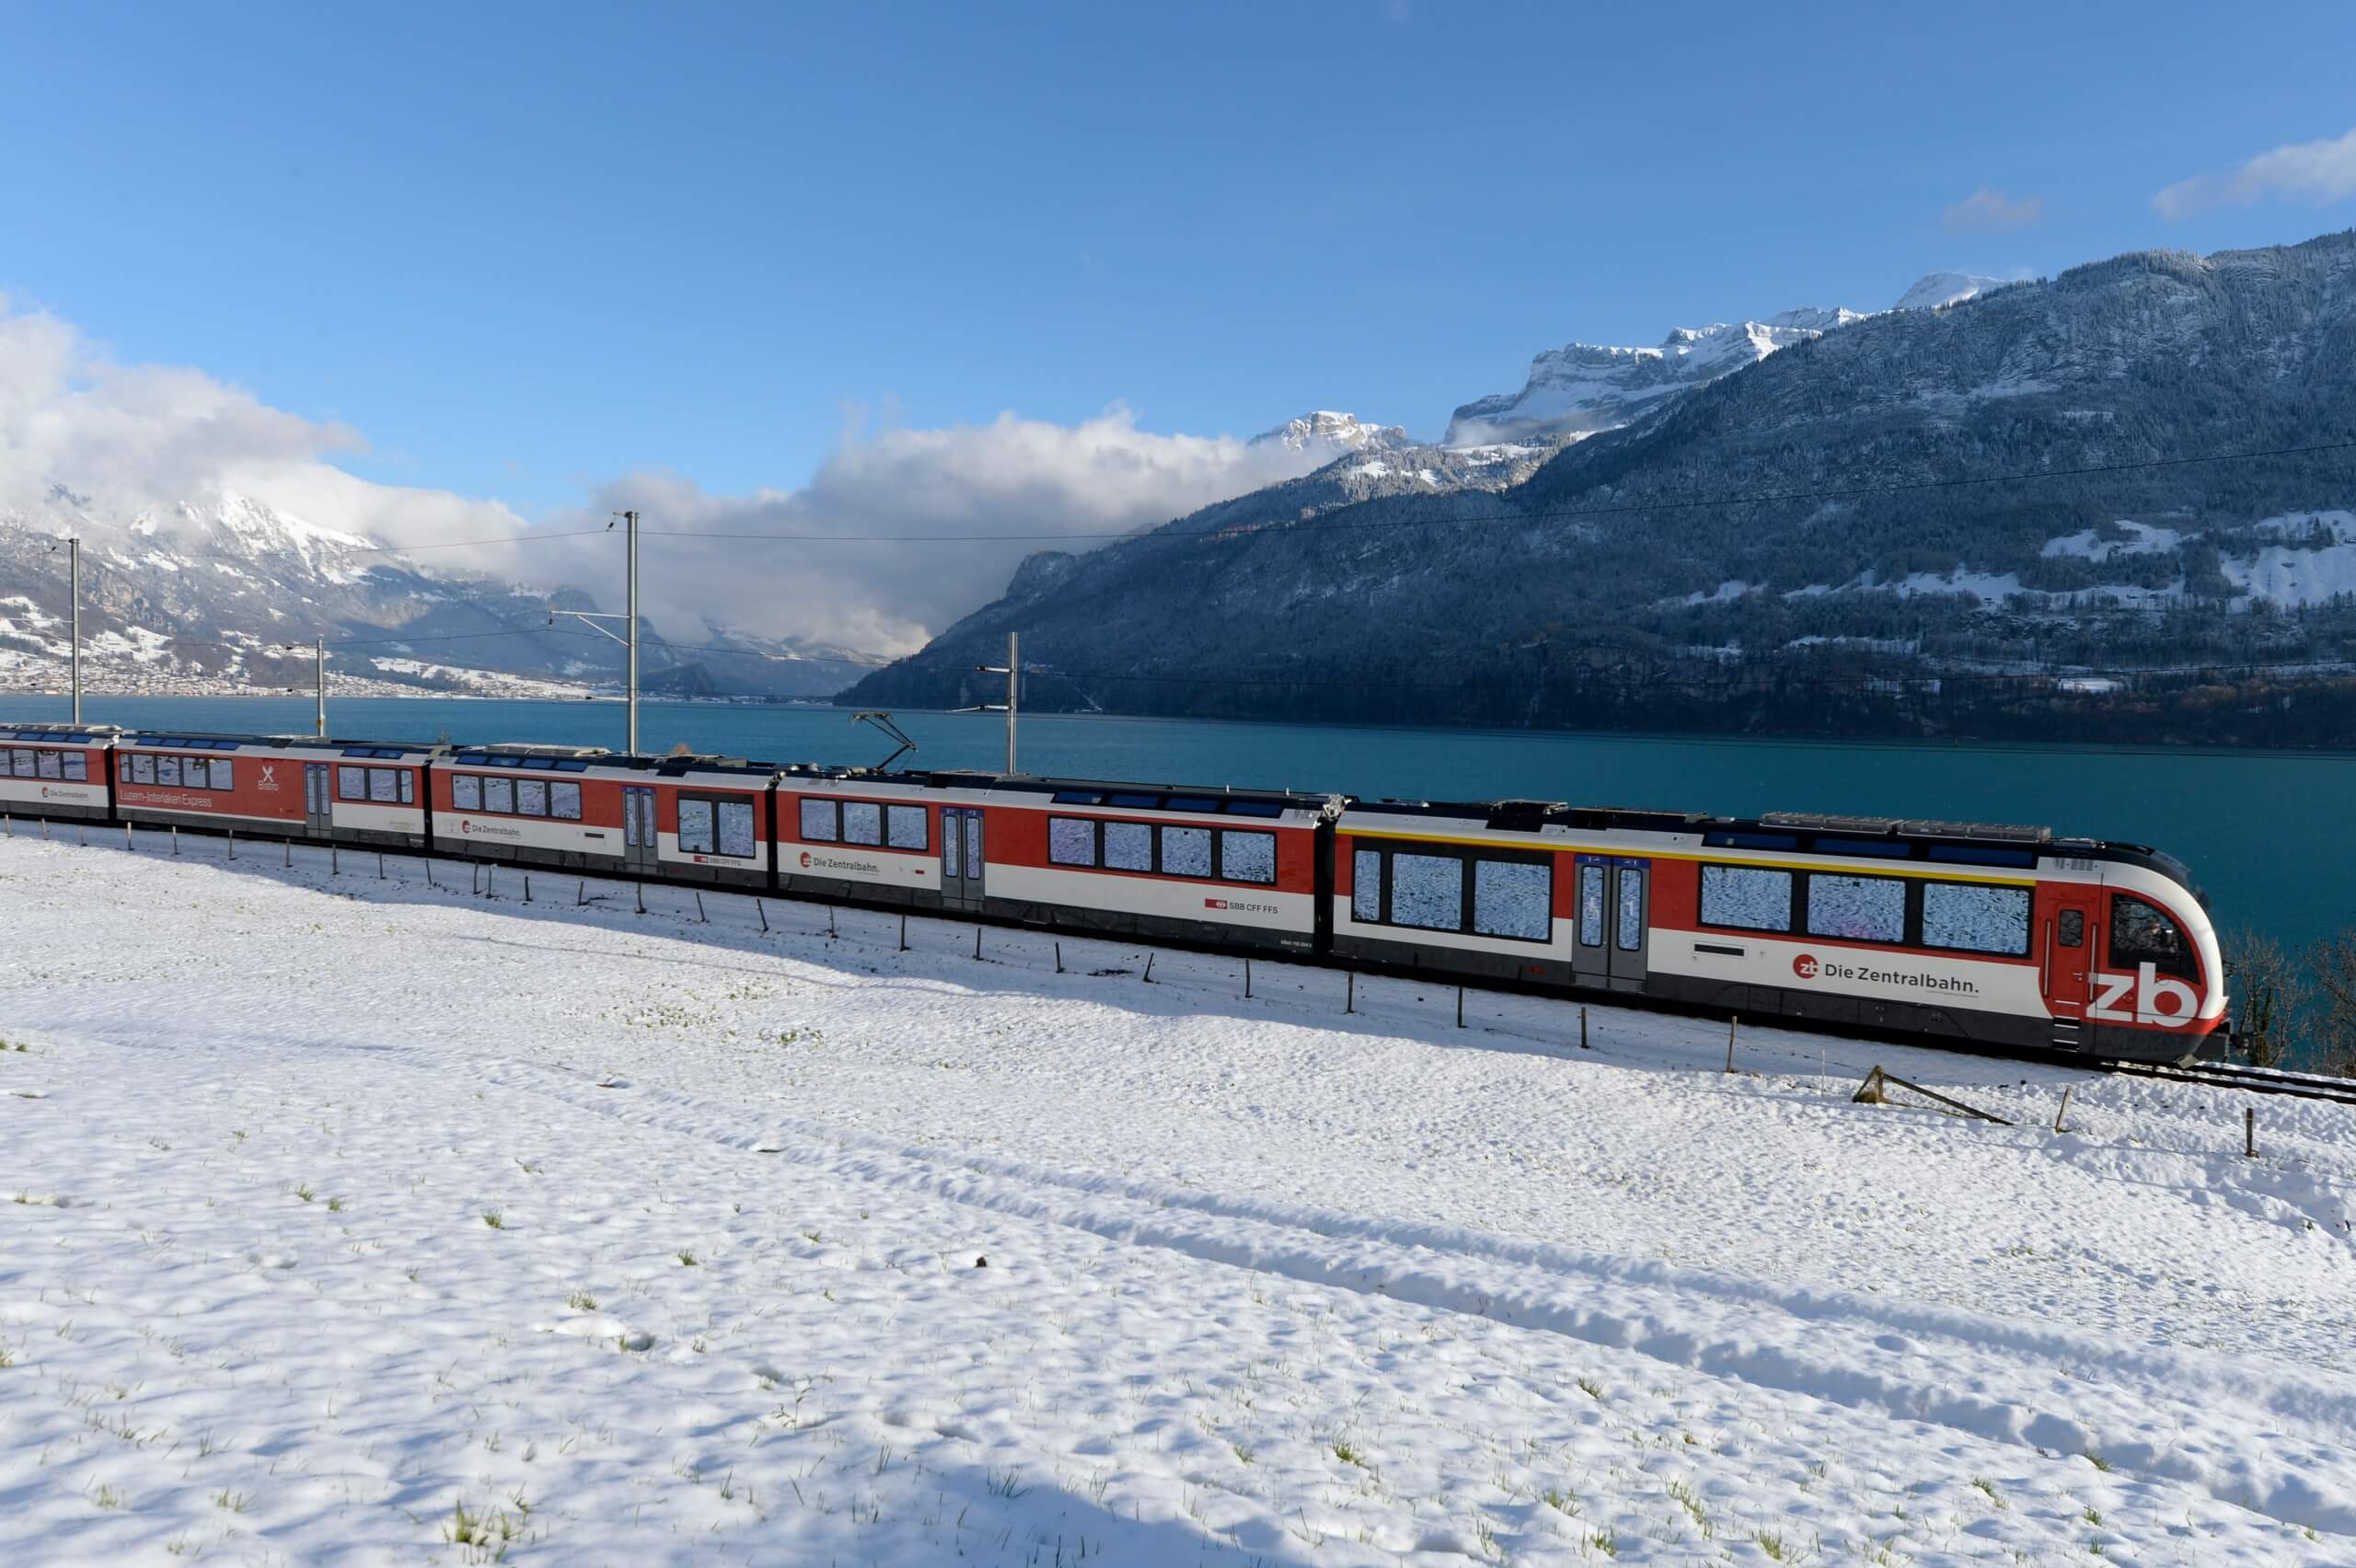 zentralbahn-luzern-interlaken-express-bahnfahrt-zug-winter